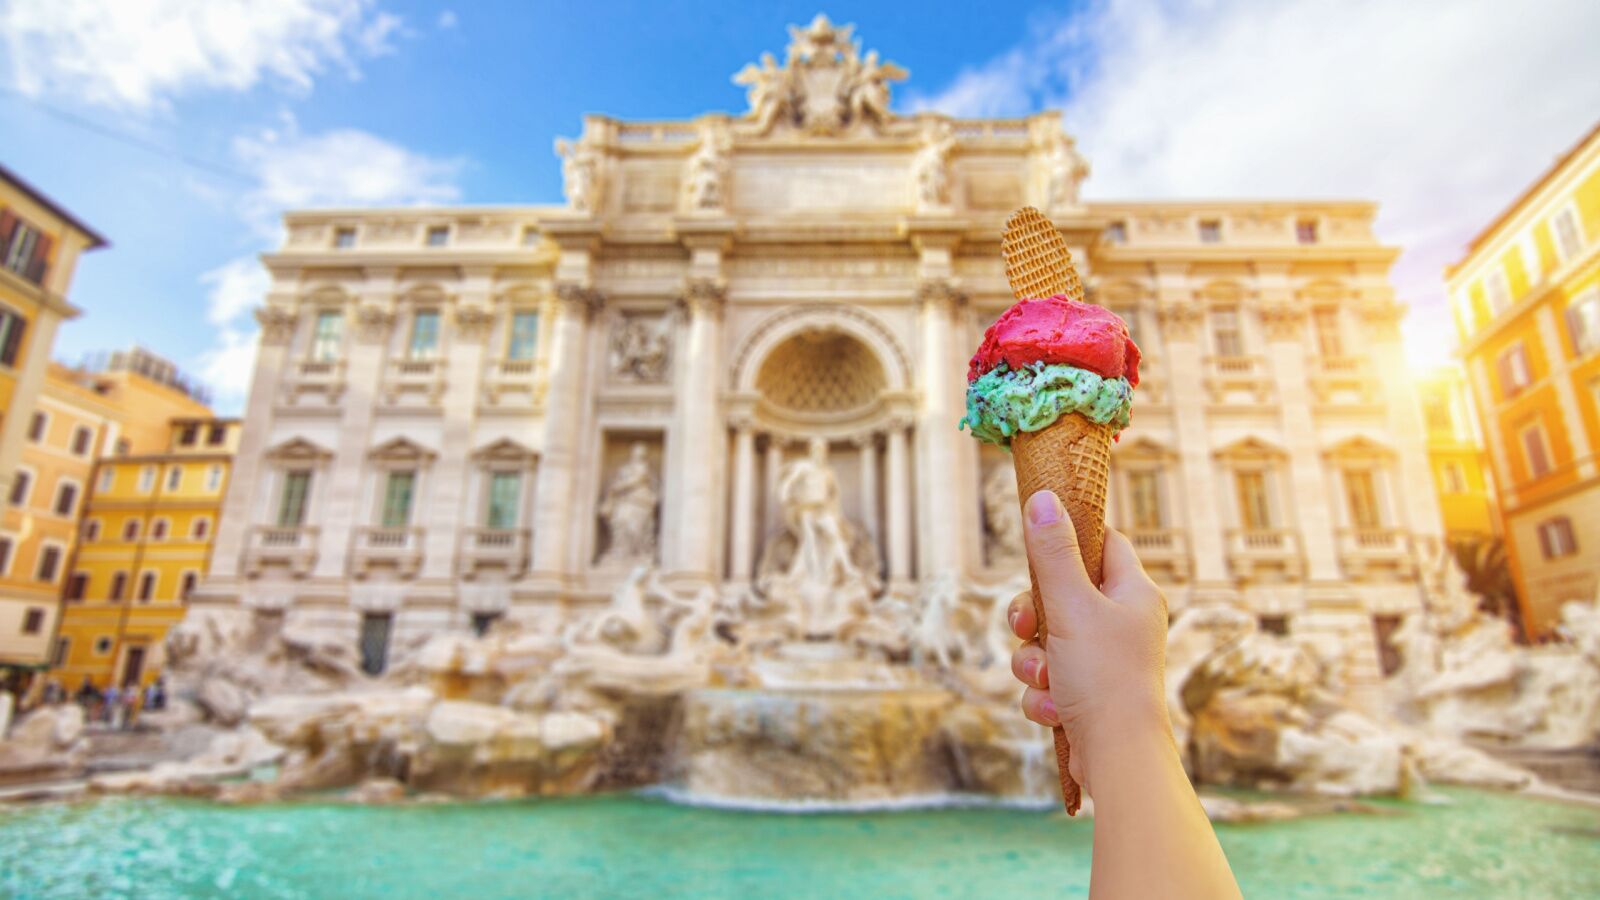 italian gelato cone at trevi fountain